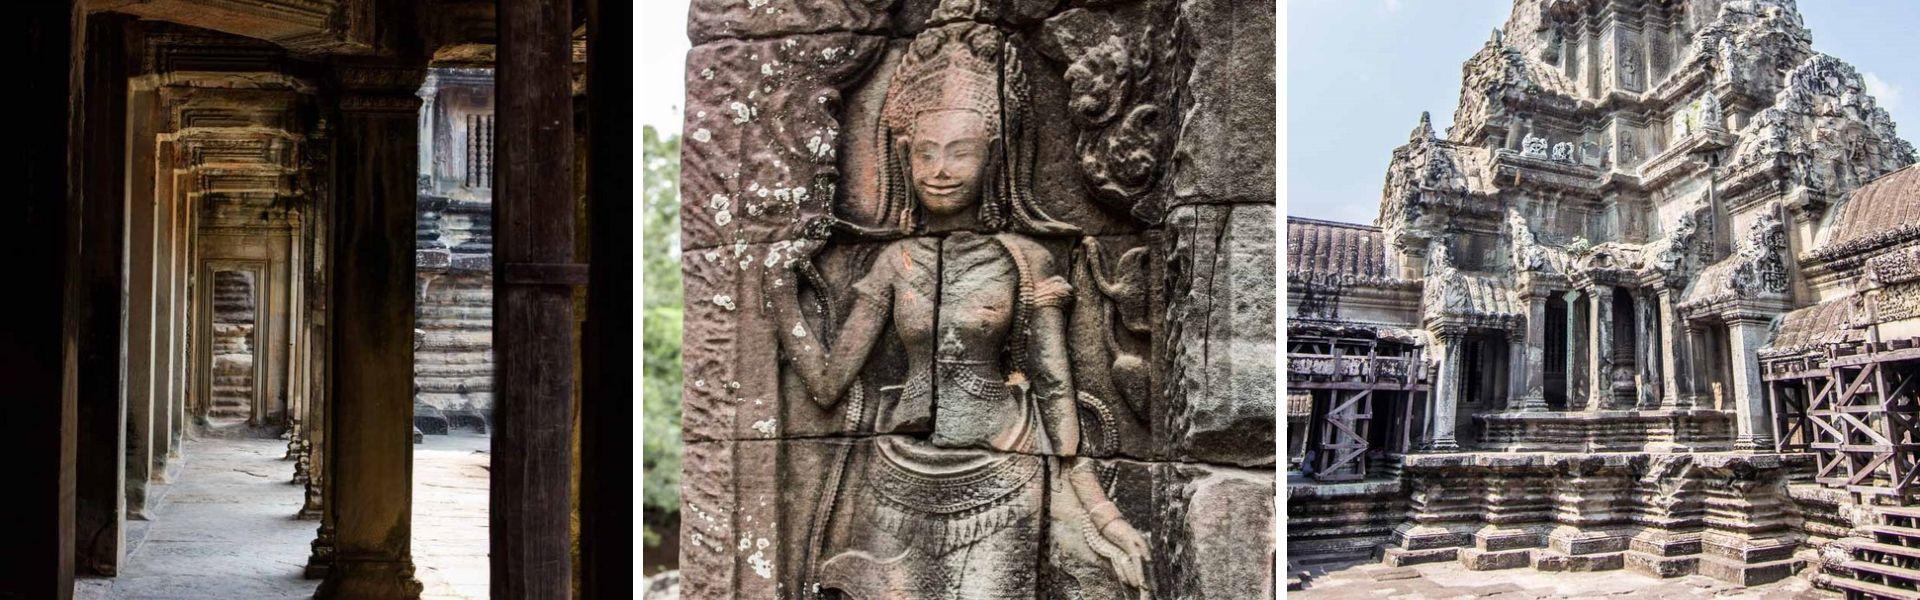 Meilleurs conseils pour visiter les temples d'Angkor au Cambodge